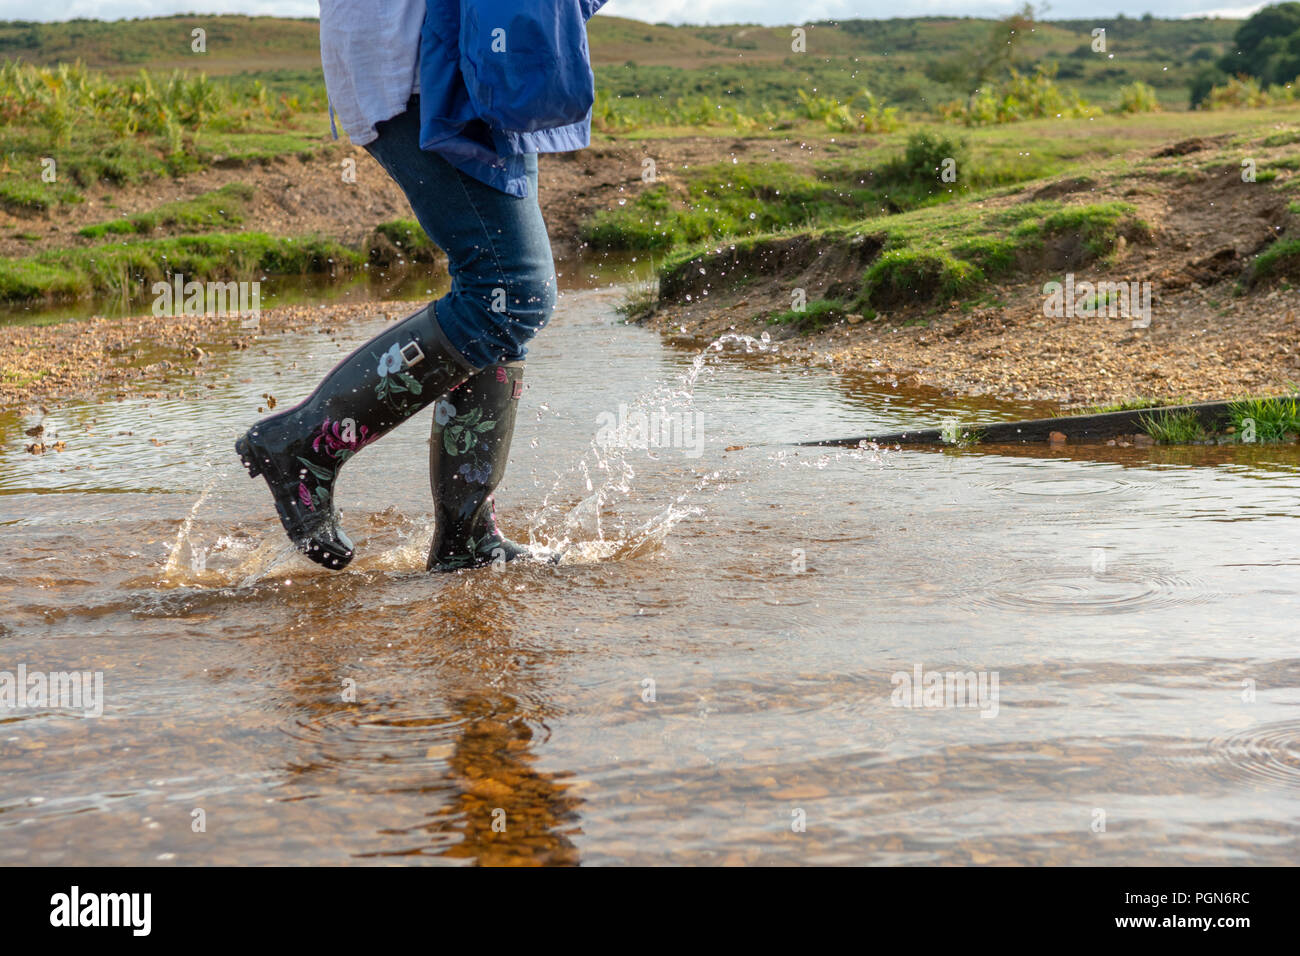 Femme portant des bottes Wellington floral noir marcher dans l'eau dans la campagne anglaise, UK Banque D'Images